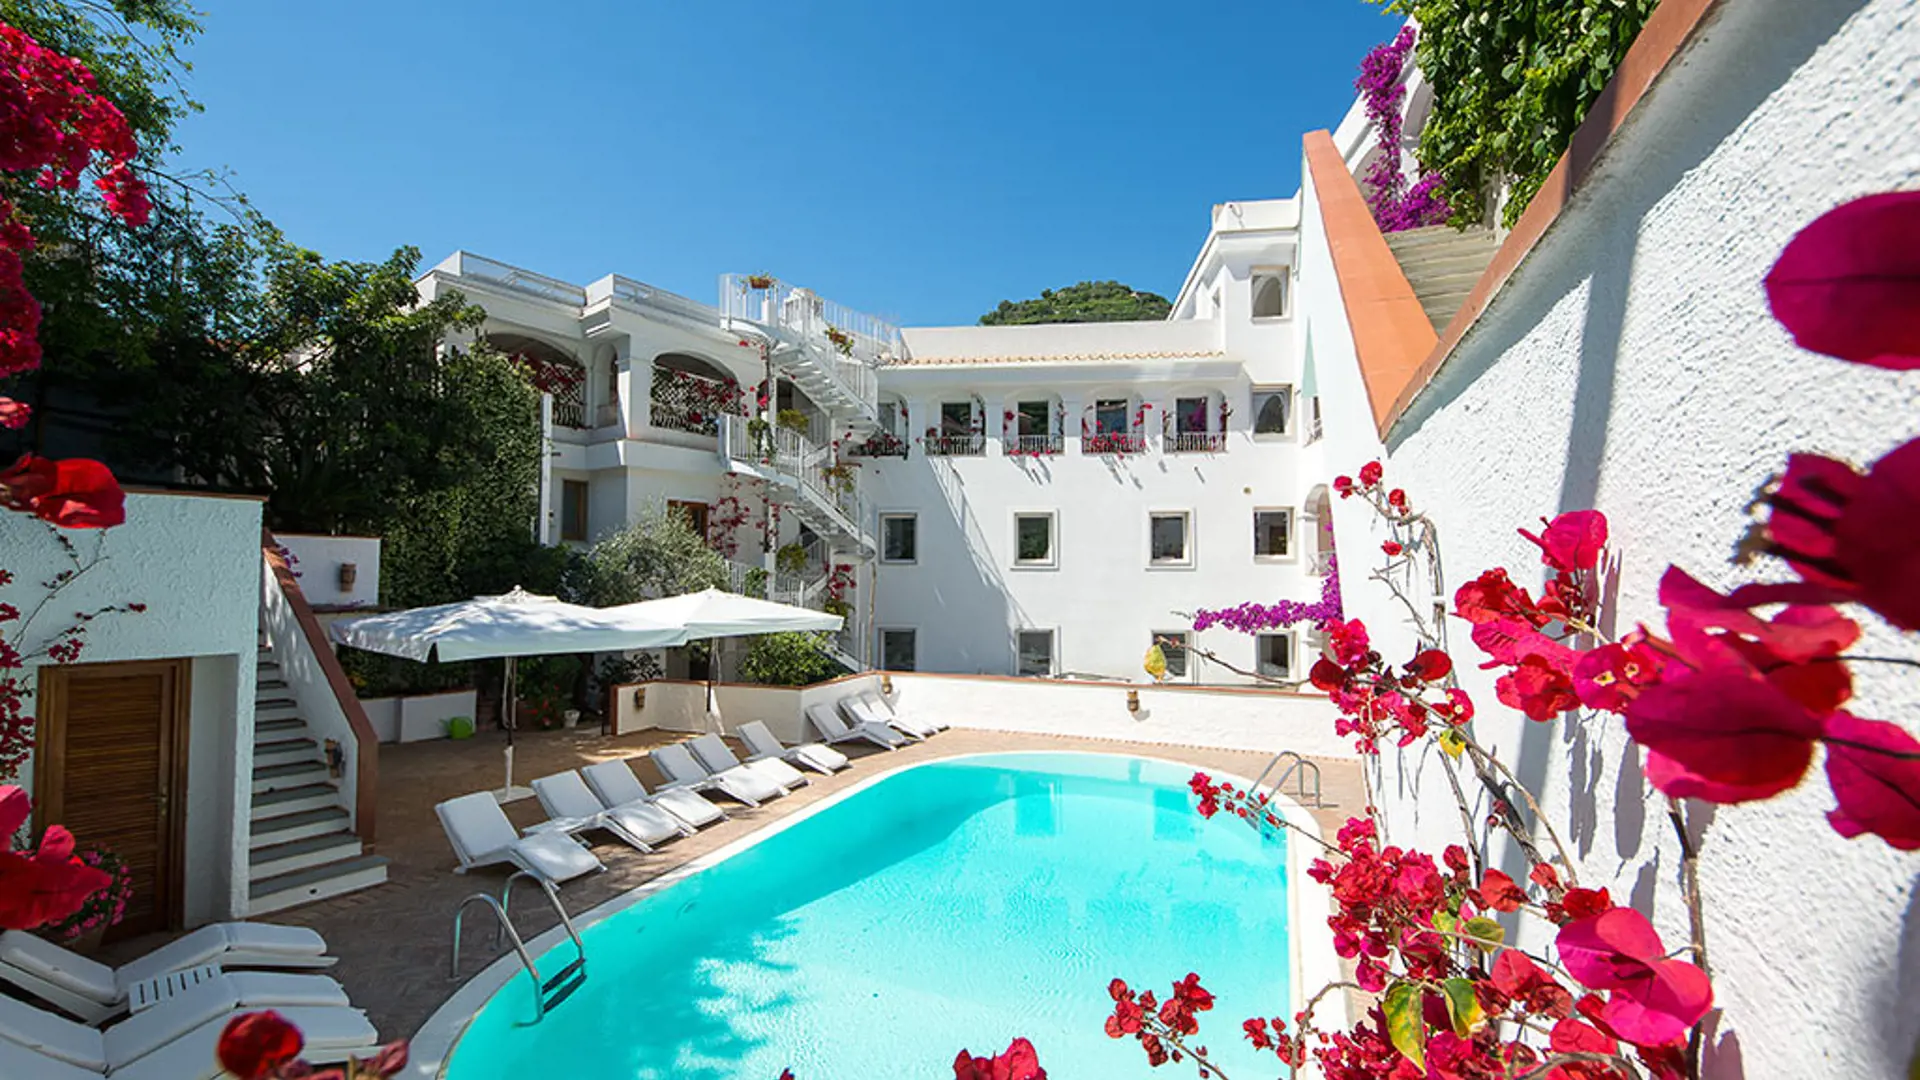 Hotel Villa Romana har en pool och ett fantastiskt läge mitt i Minori